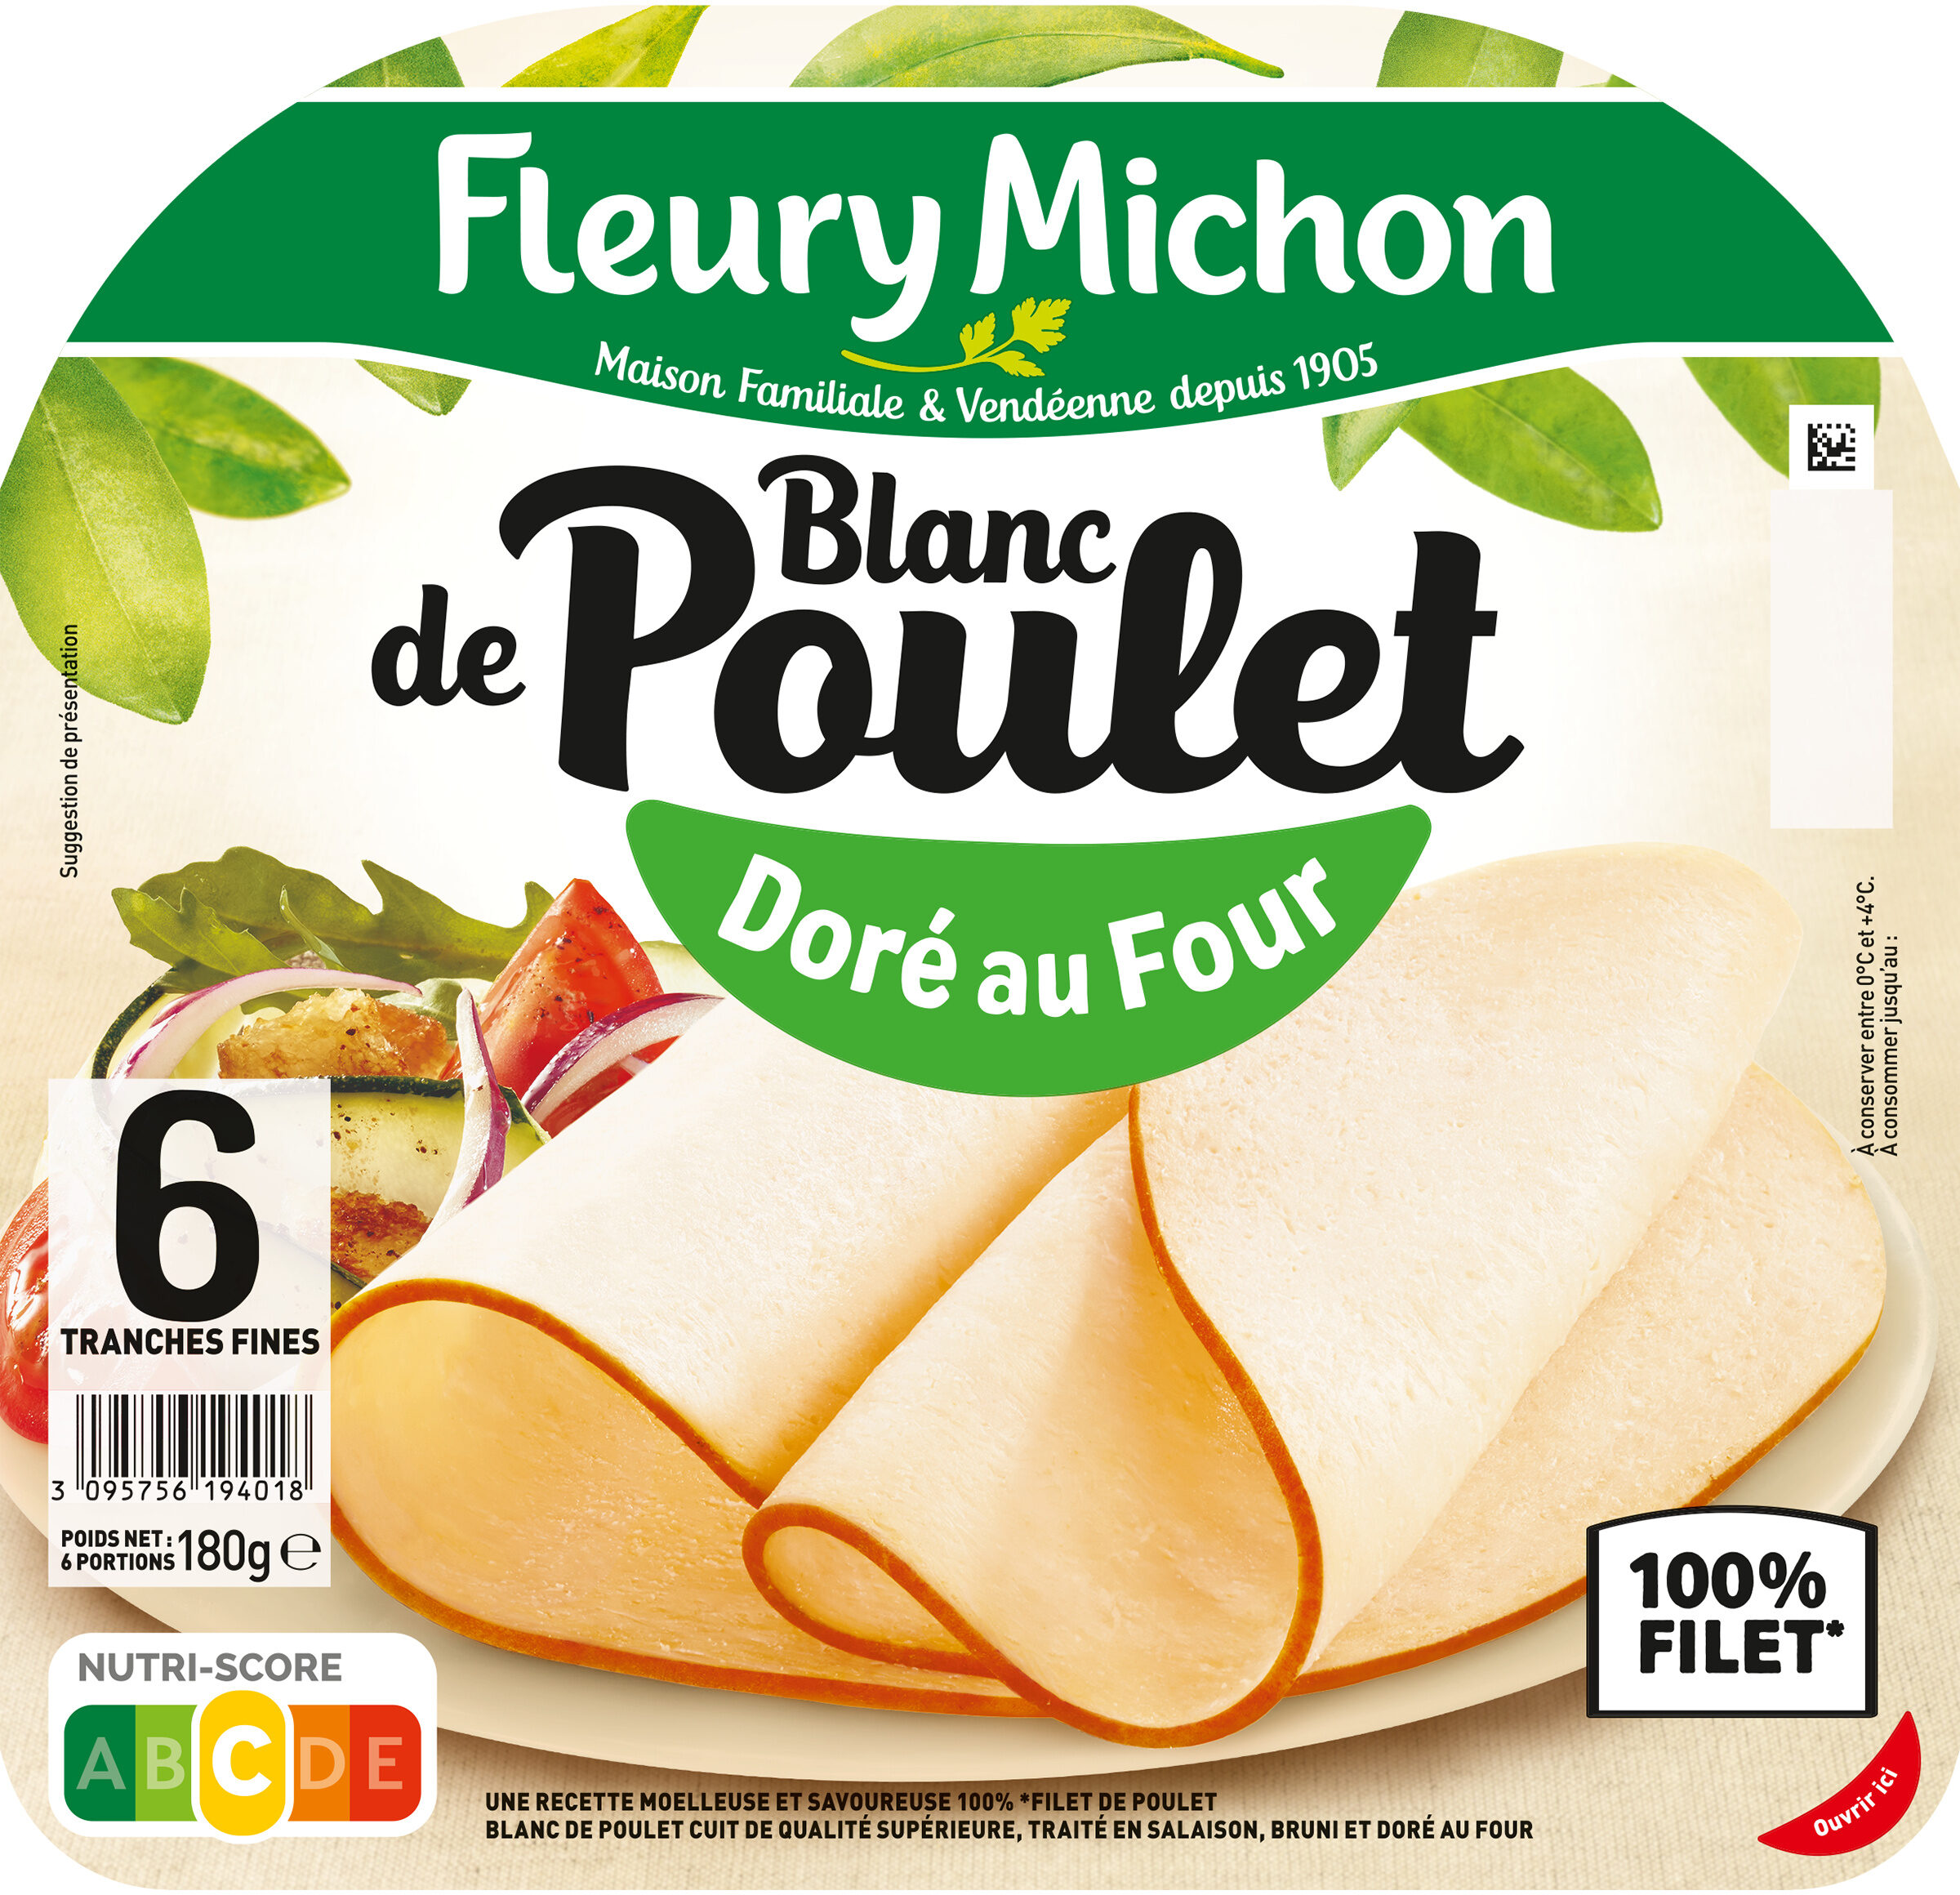 Blanc de Poulet - Doré au Four - Product - fr